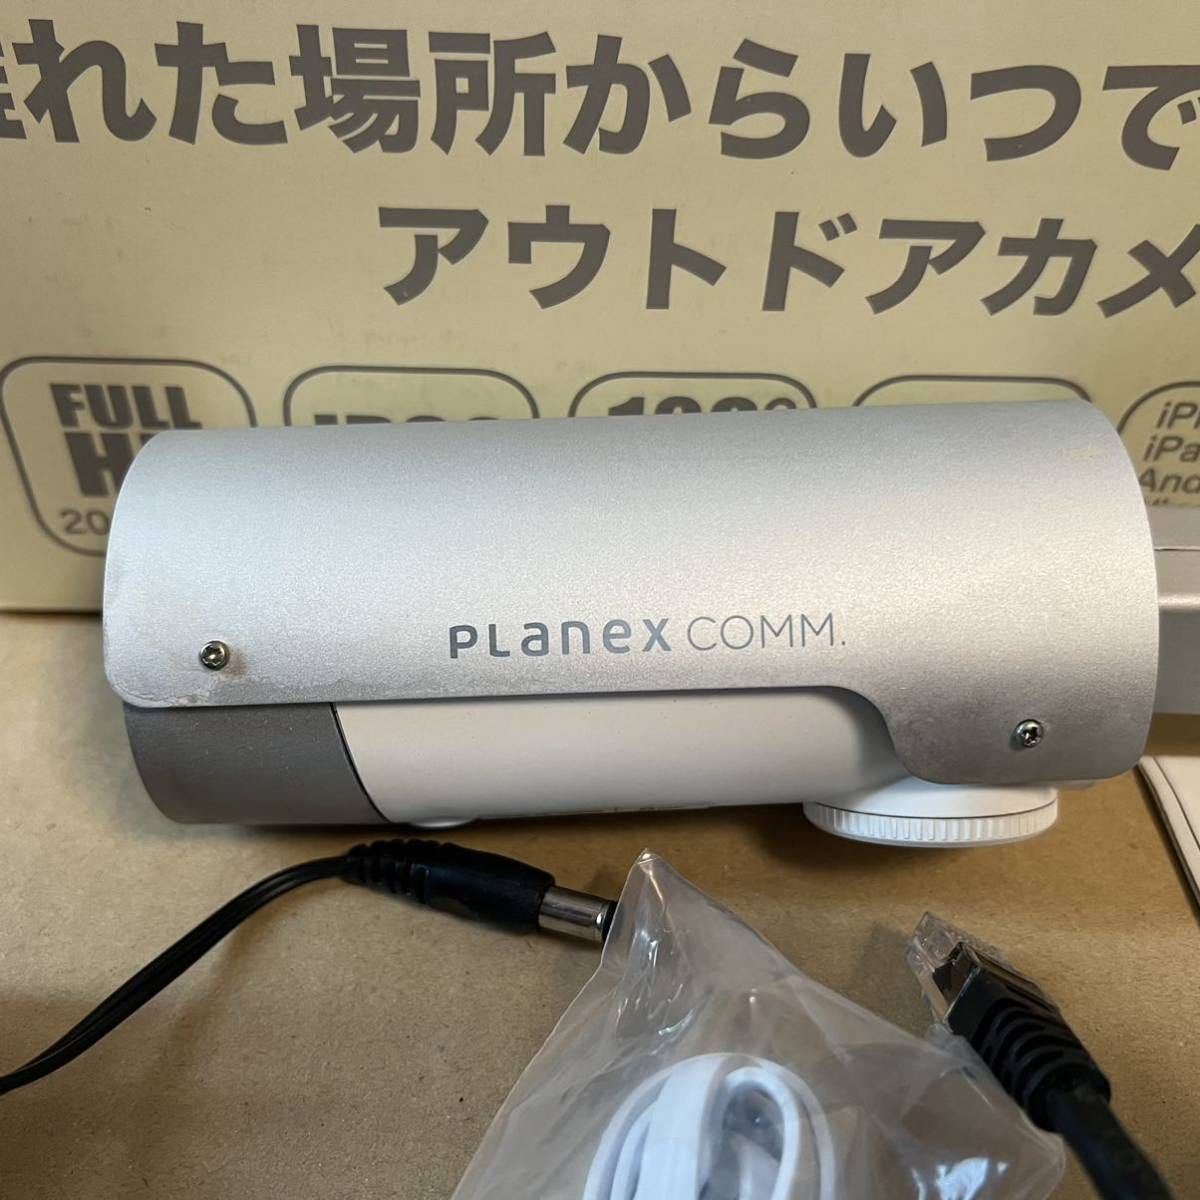 ※難あり Planex アウトドア対応 ネットワークカメラ カメラ一発 CS-W80FHD 有線LAN専用モデル